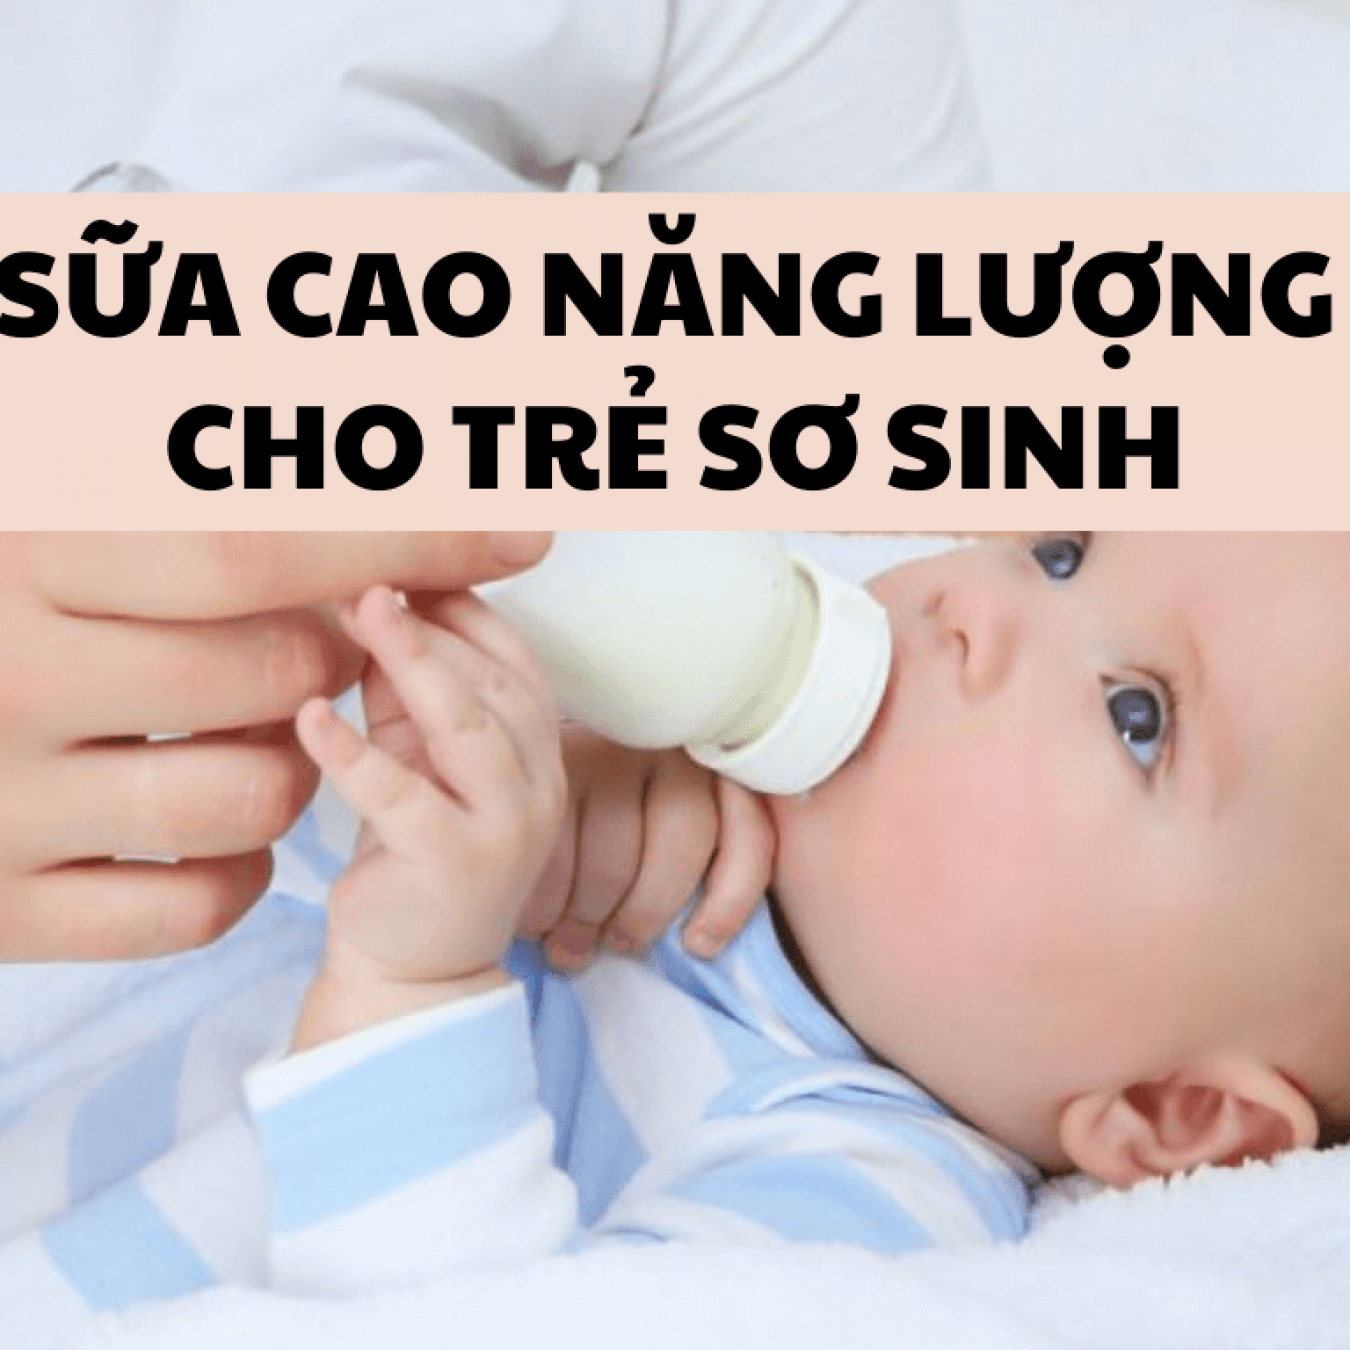 Review 5 dòng sữa cao năng lượng cho trẻ sơ sinh tốt nhất